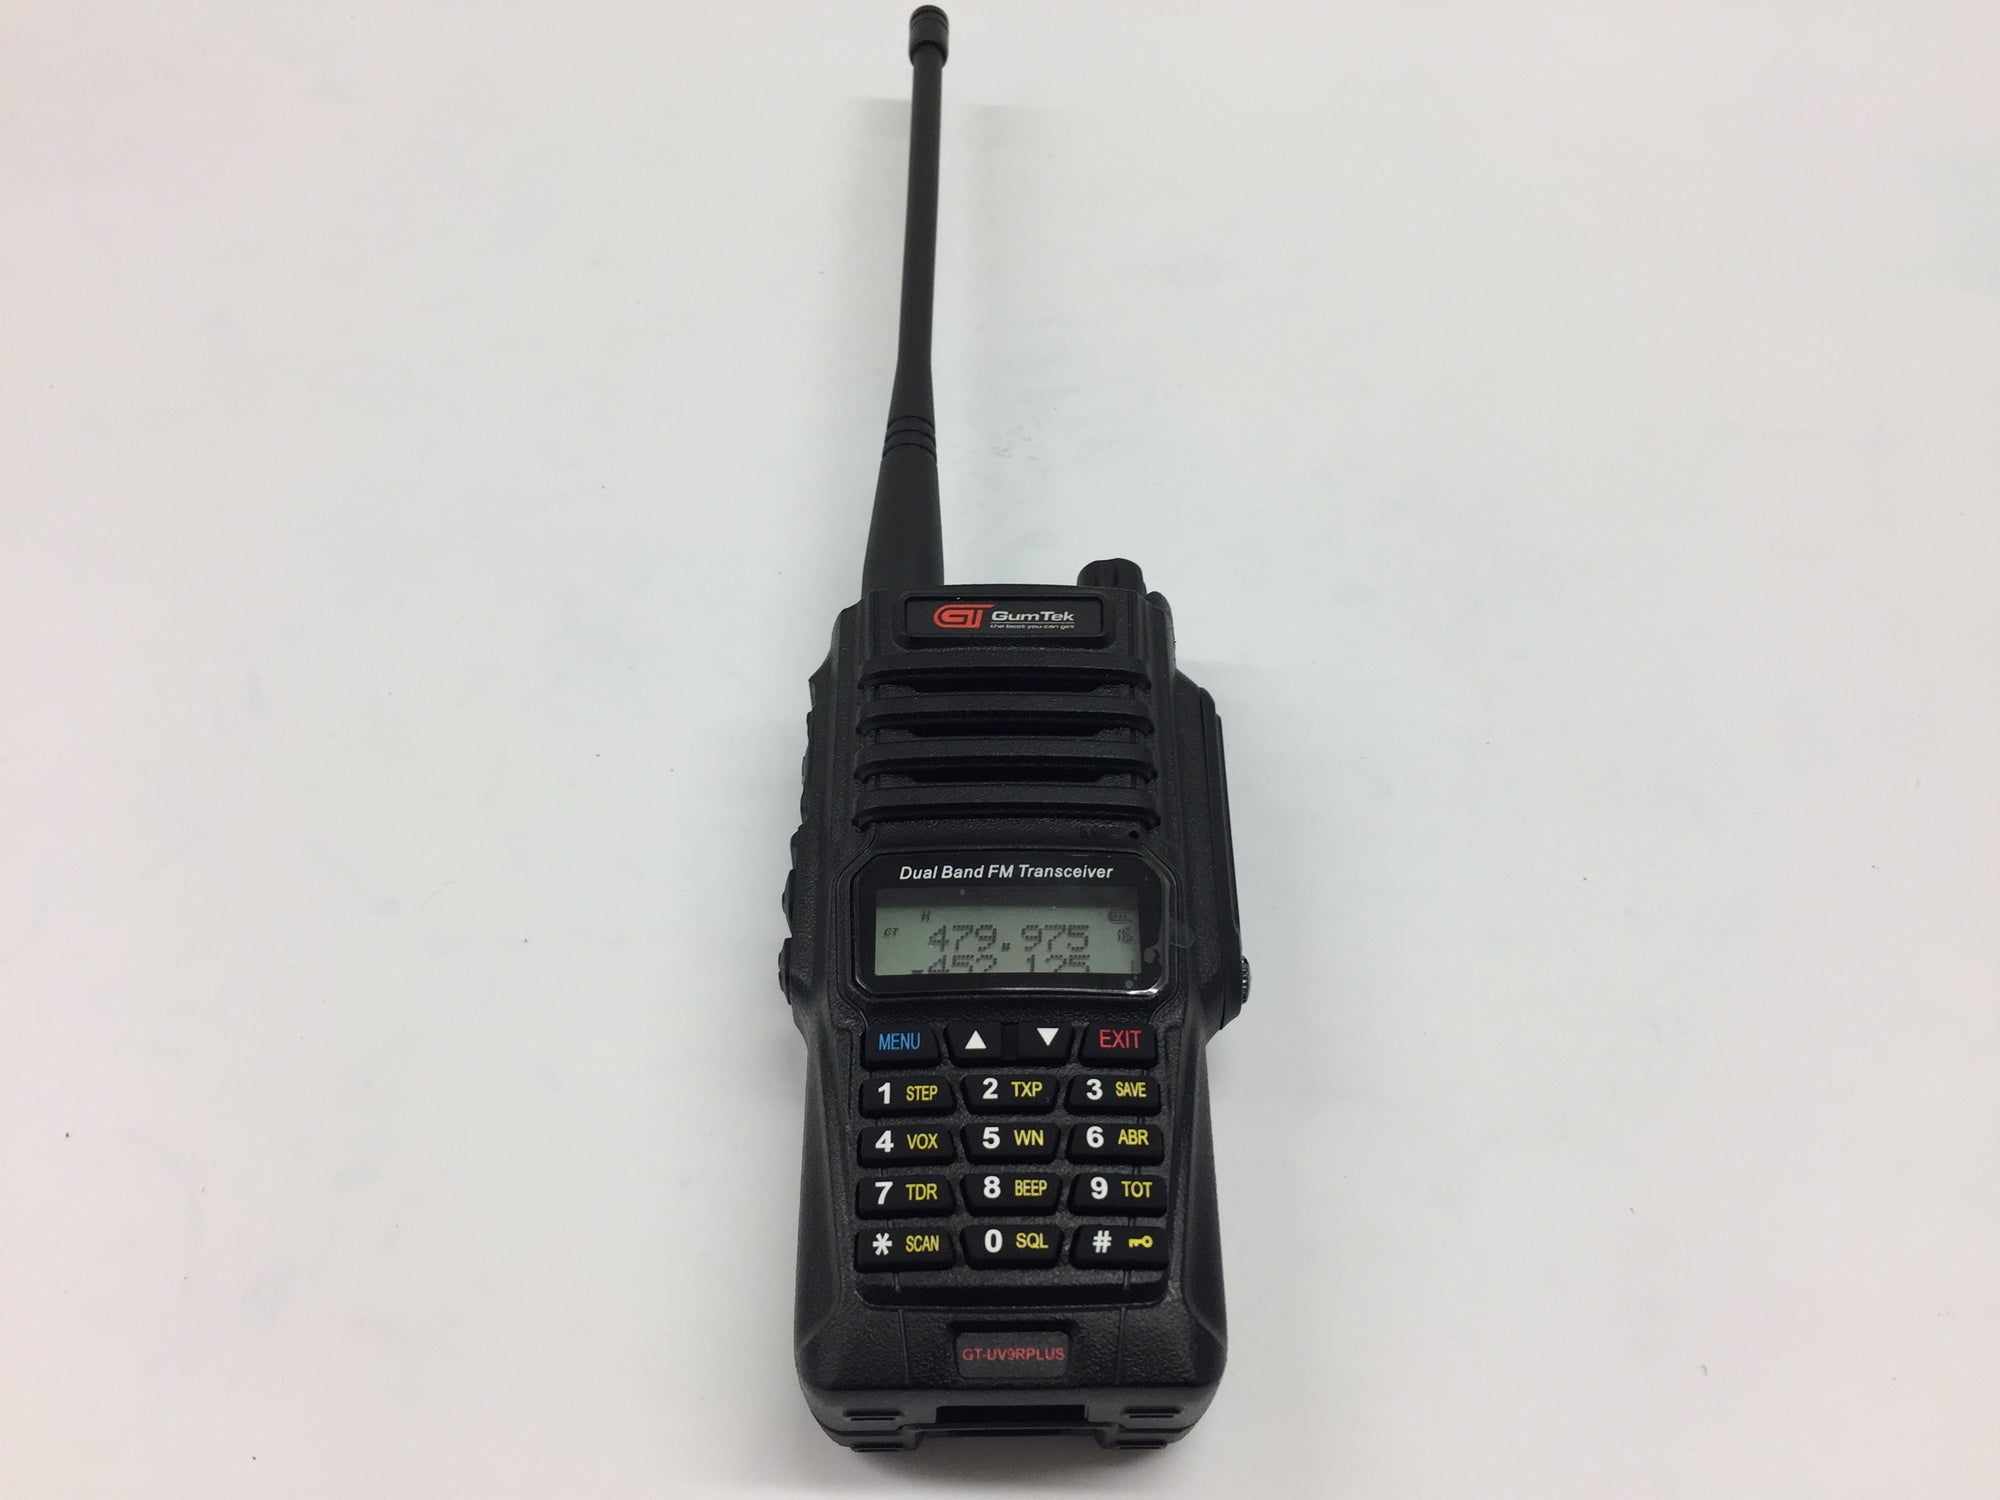 Gumtek UV-9R Plus IP67 Waterproof UHF/VHF Walkie Talkie Two Way Radio